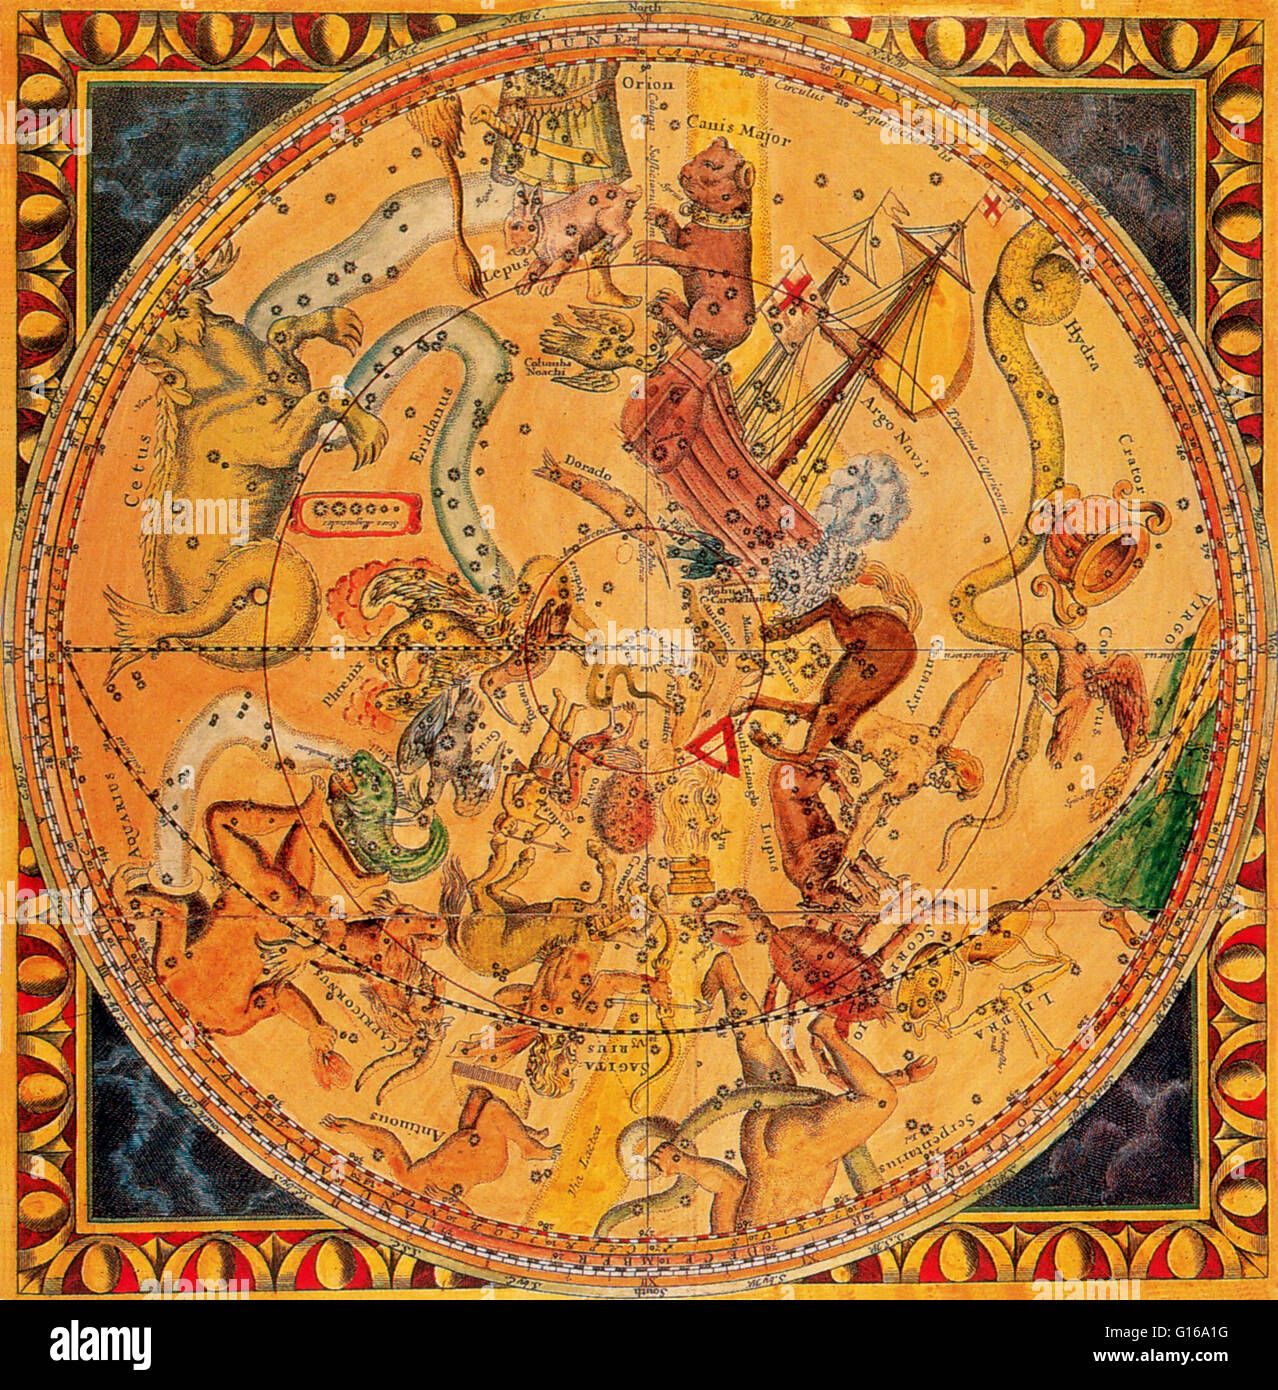 Constellation de l'hémisphère Nord, 1686. Philip Lea a été l'un des principaux concepteurs et éditeurs anglais de son époque, actif entre 1683 et sa mort en 1700. Cette joliment décorées et avec précision la carte gravée de l'hémisphère Nord a été publi Banque D'Images